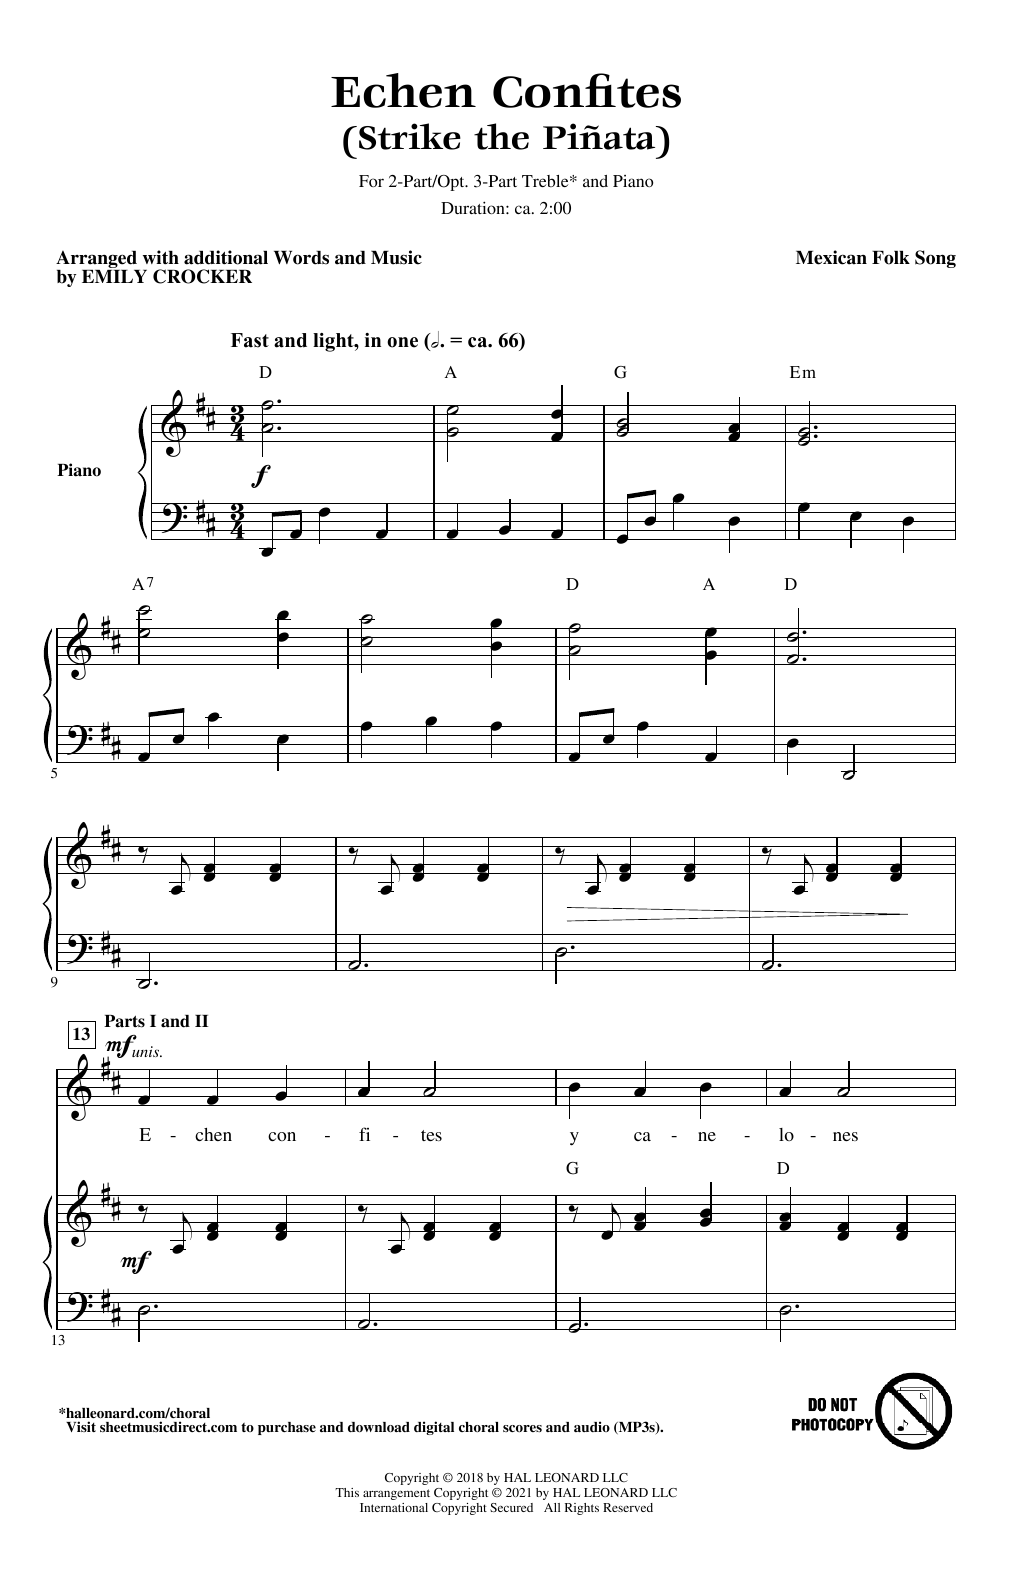 Mexican Folk Song Echen Confites (Strike the Piñata) (arr. Emily Crocker) Sheet Music Notes & Chords for 2-Part Choir, 3-Part Mixed Choir - Download or Print PDF